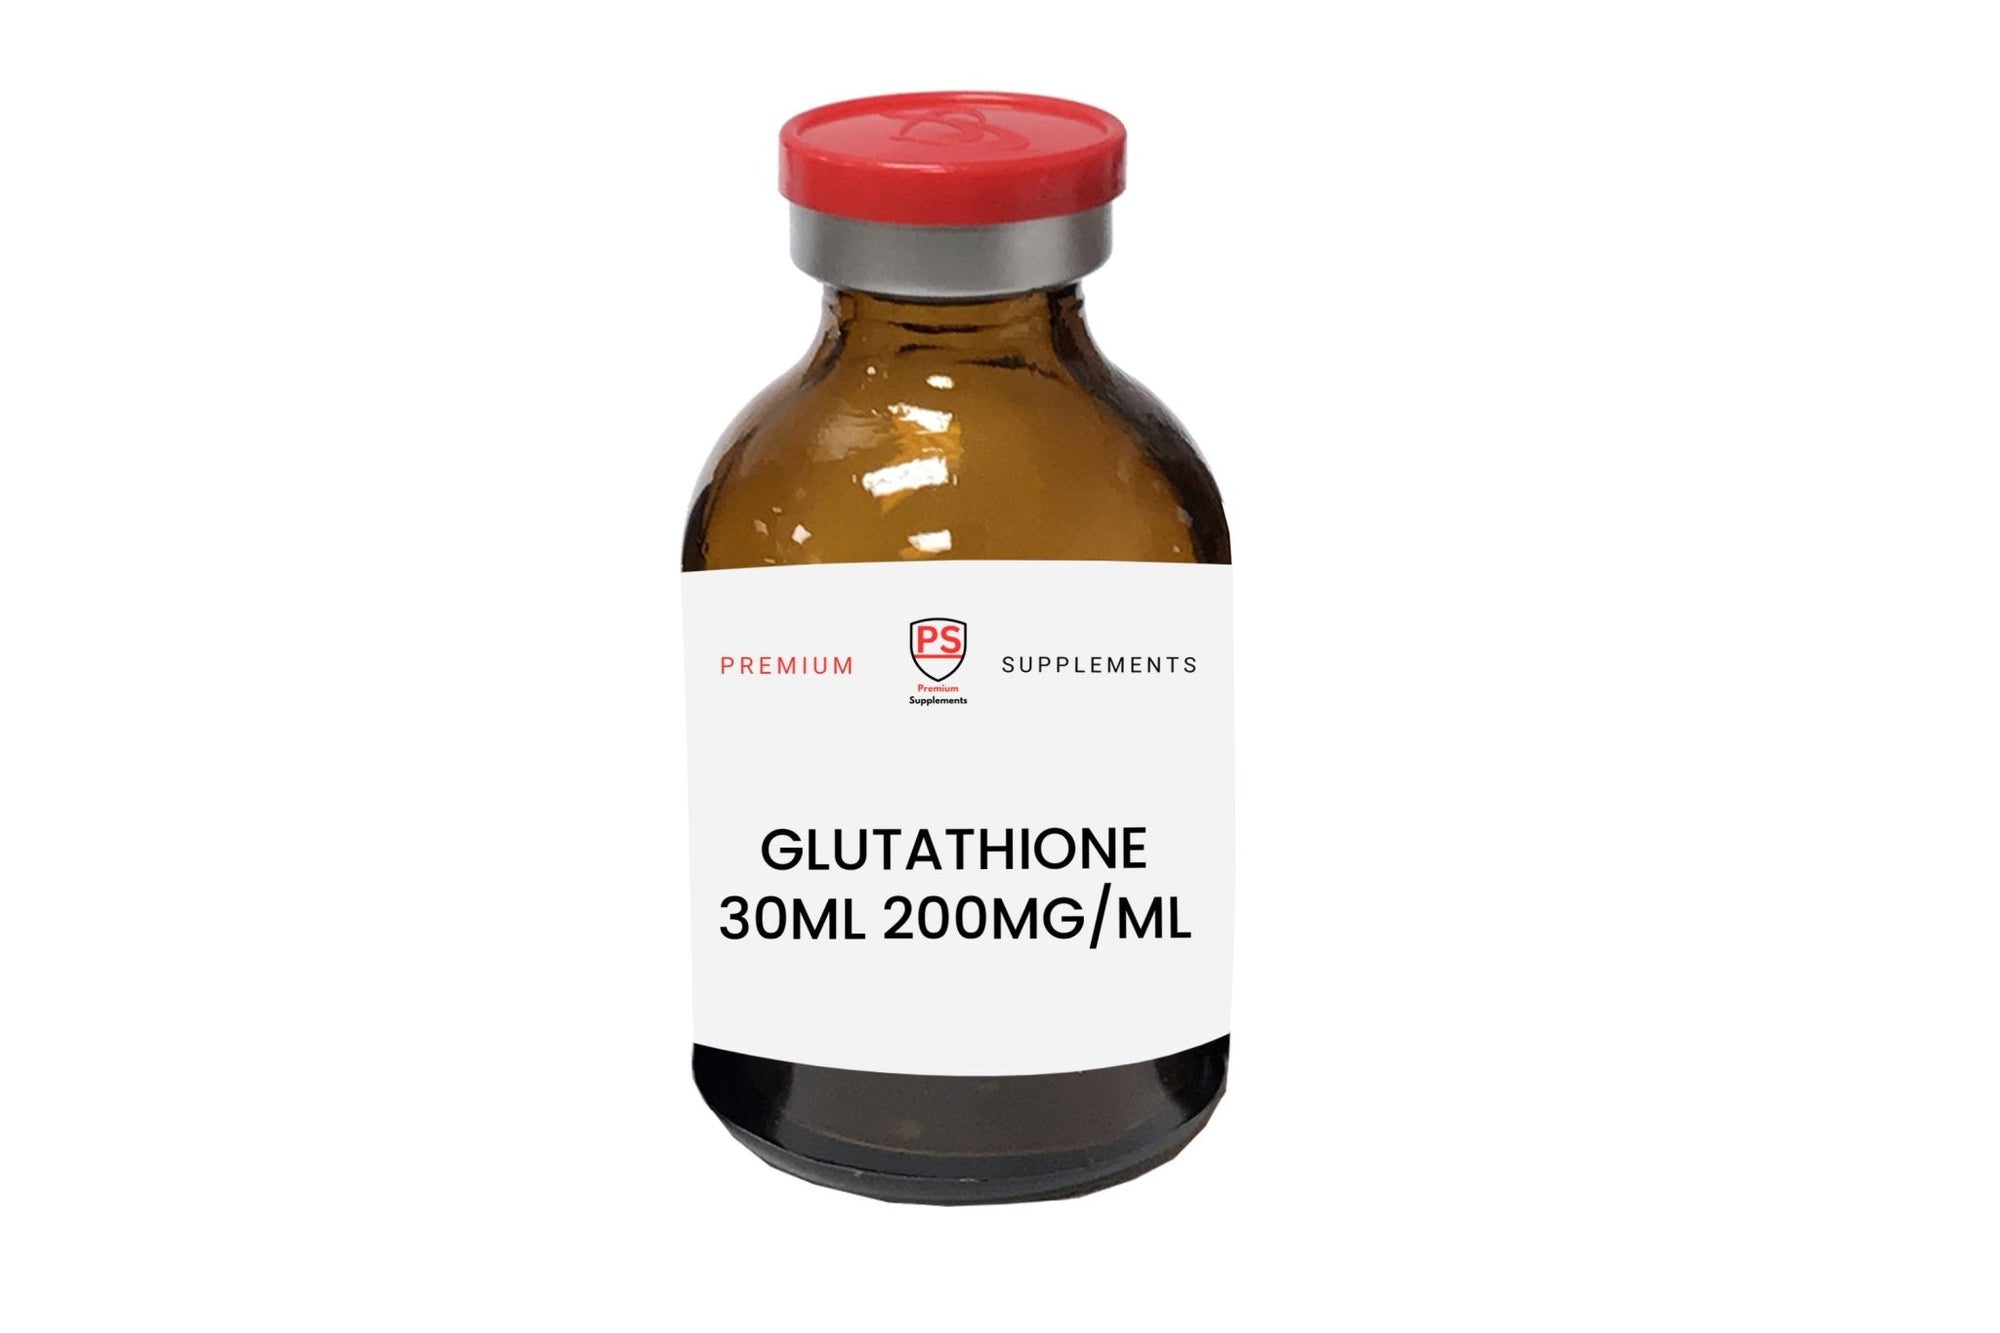 Glutathione 30ml 200mg/ml - Premiumsupps